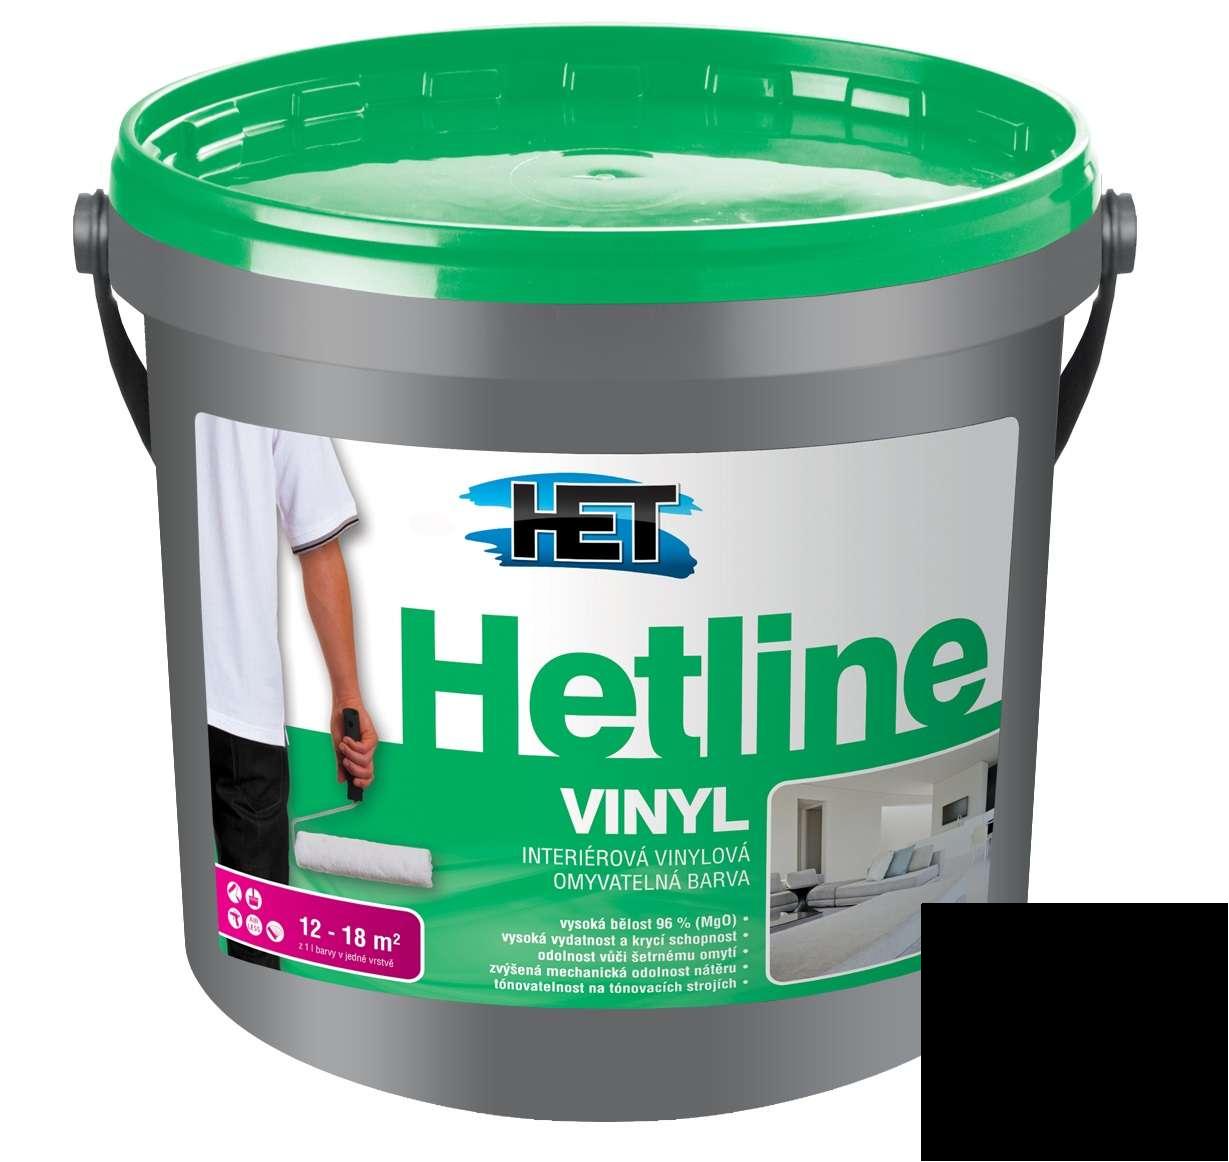 Het Hetline Vinyl * Interiérová vinylová omyvatelná barva pro reprezentatívní prostory. 1